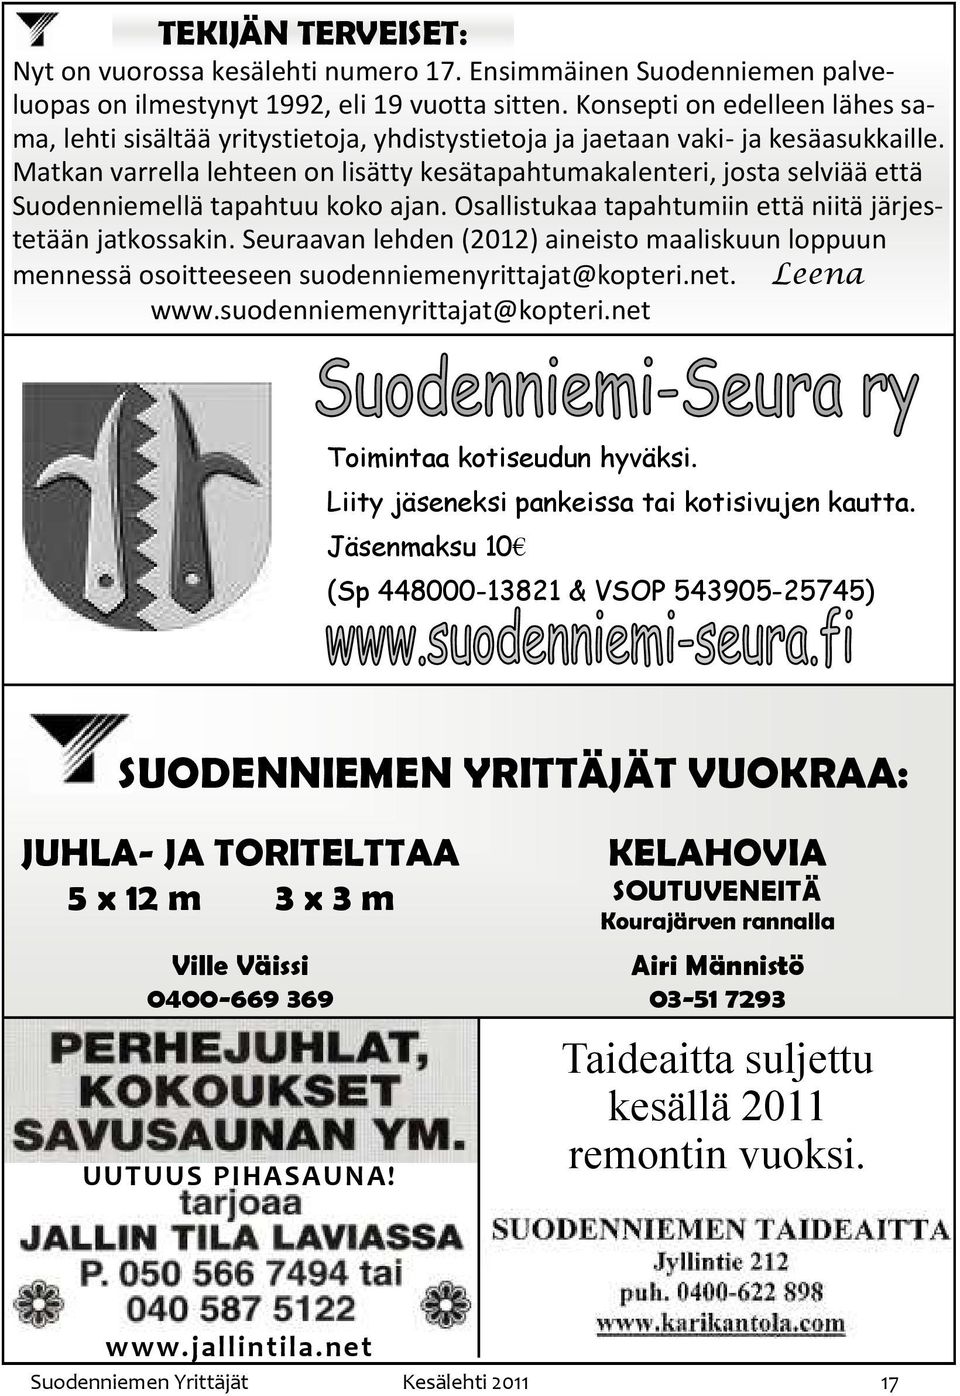 Matkan varrella lehteen on lisätty kesätapahtumakalenteri, josta selviää että Suodenniemellä tapahtuu koko ajan. Osallistukaa tapahtumiin että niitä järjestetään jatkossakin.